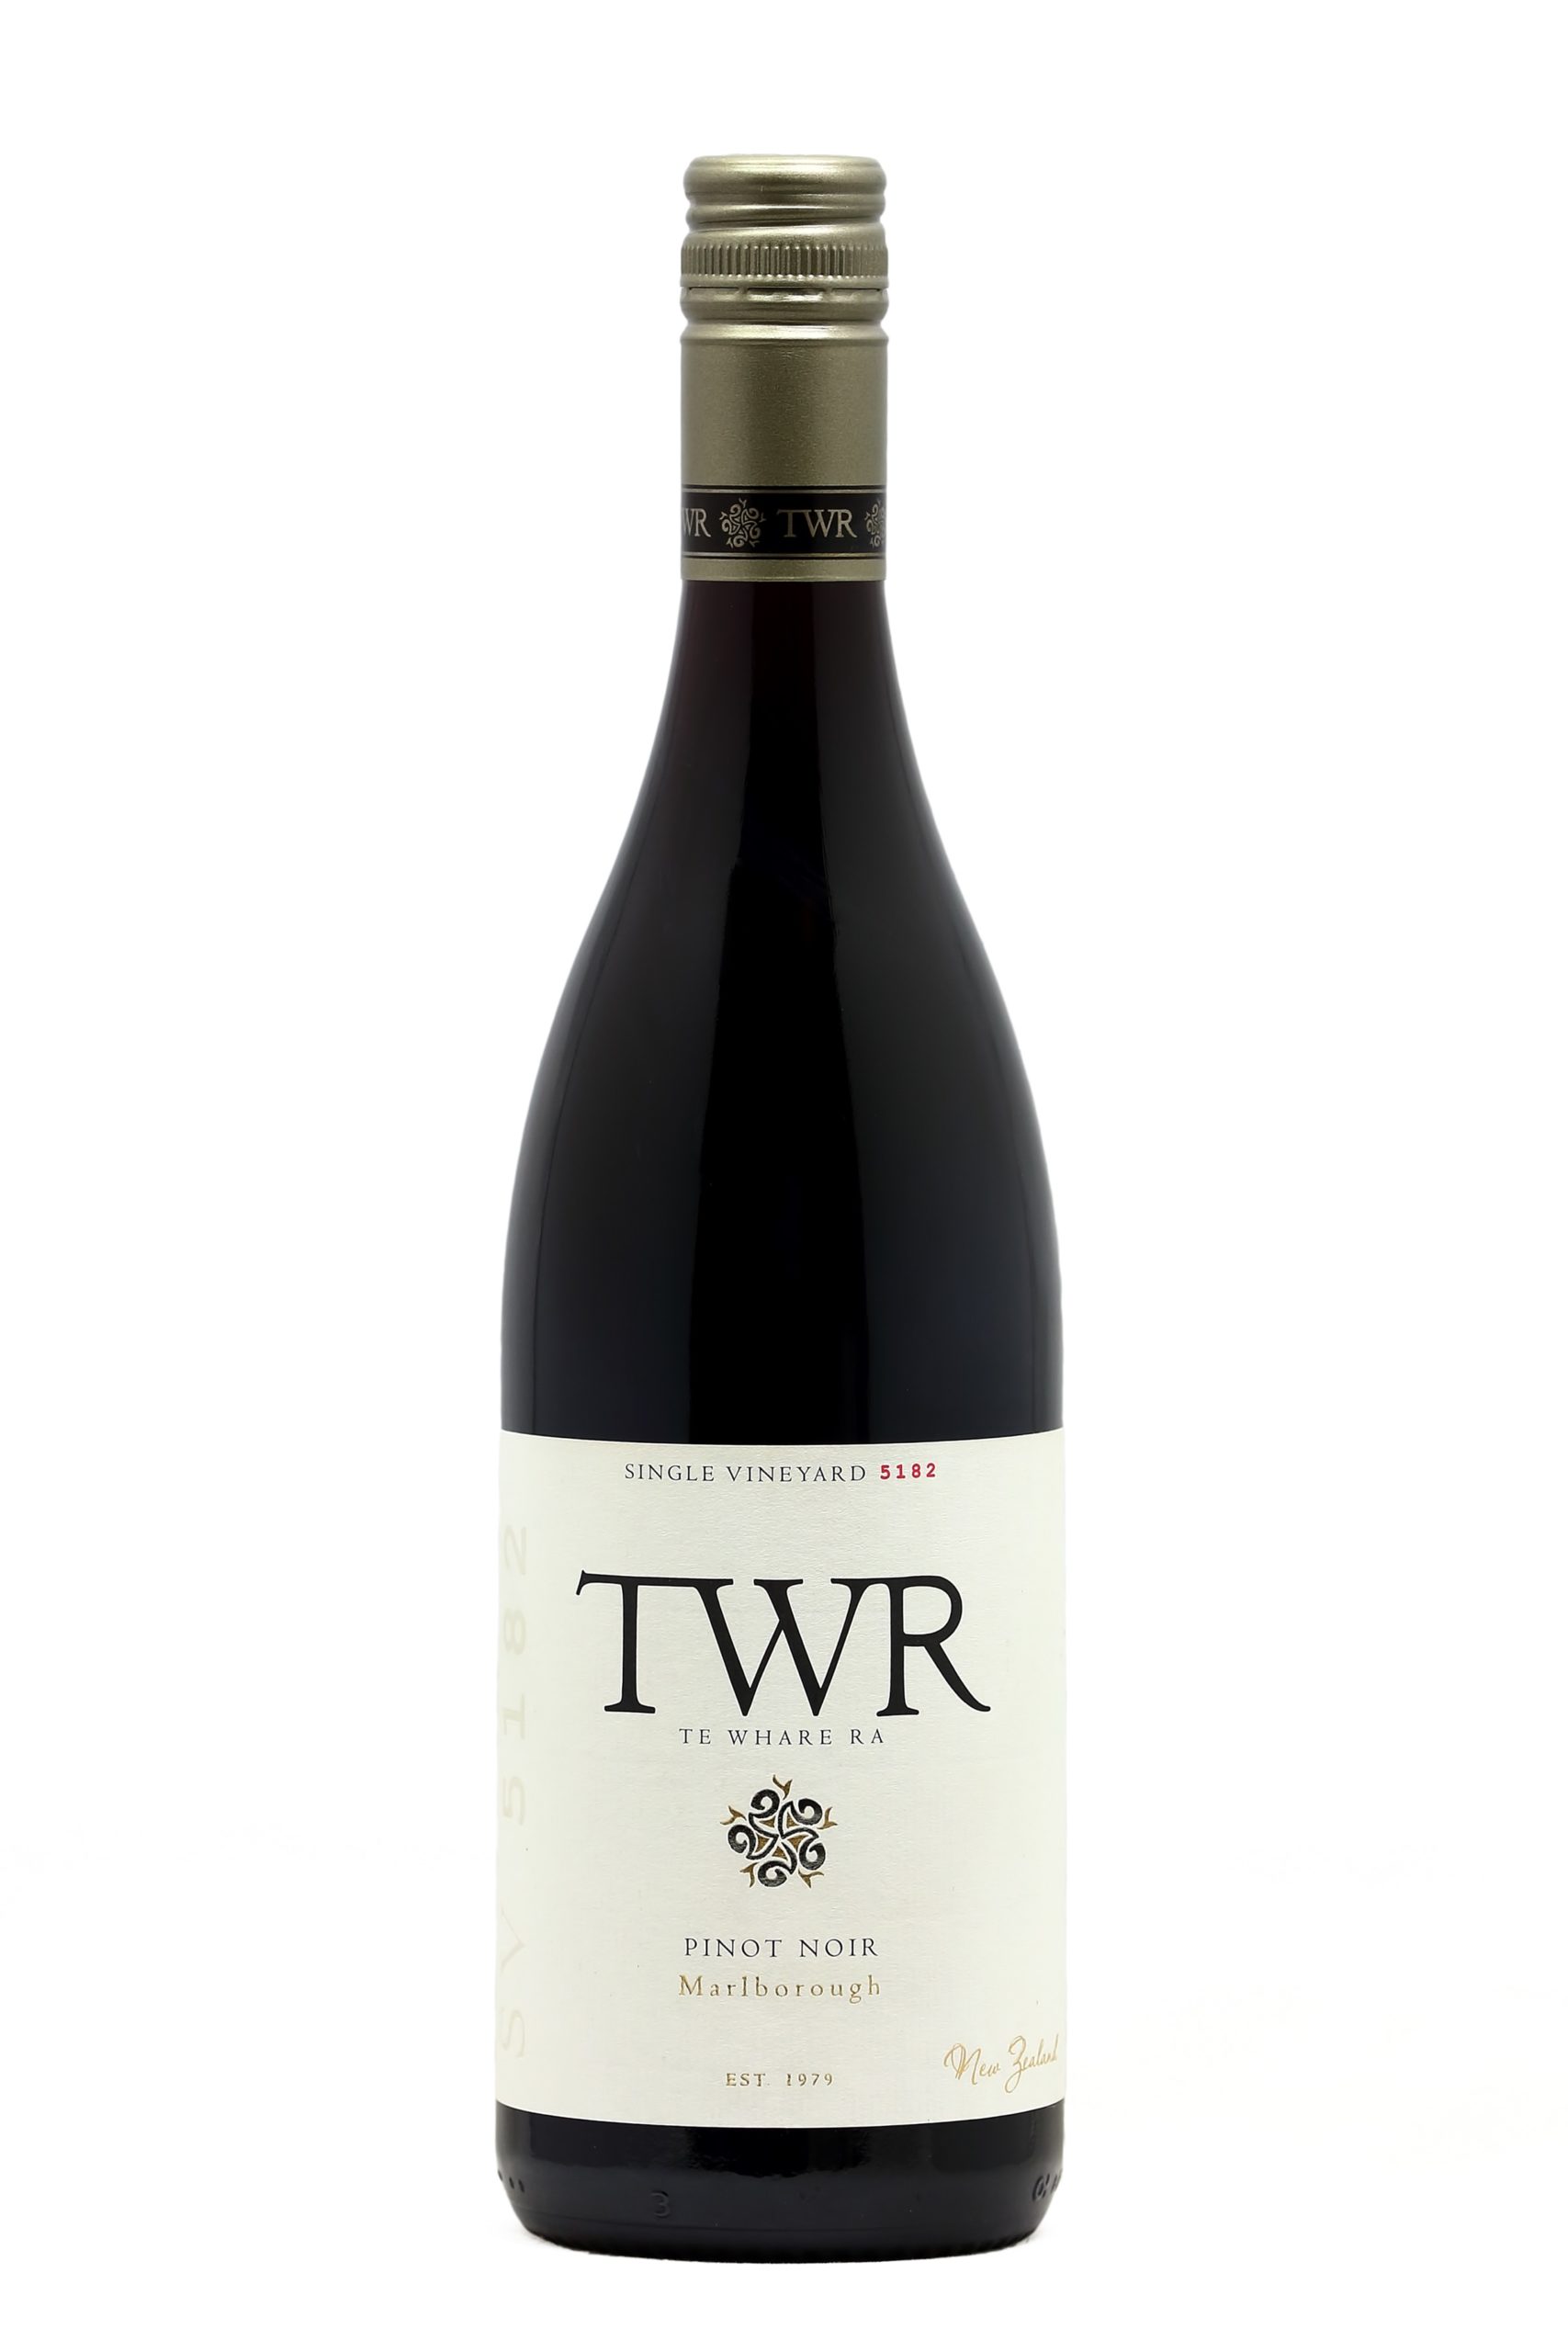 Te Whare Ra Single Vineyard 5182 Pinot Noir